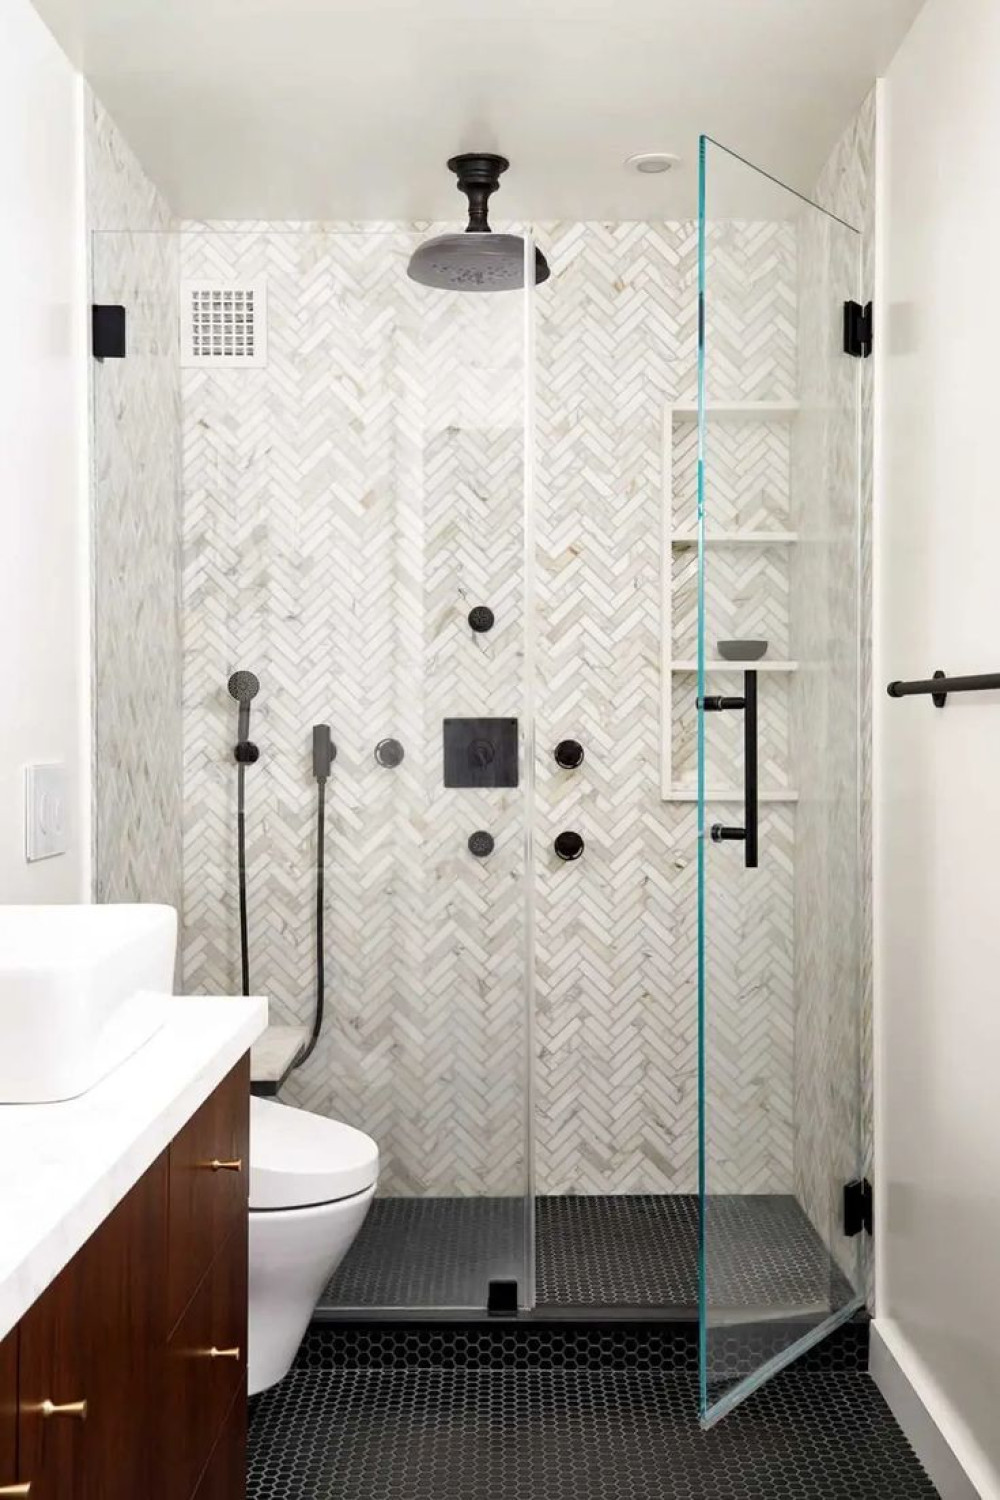 Small Bathroom Ideas with a Shower [PHOTOS]  Small bathroom